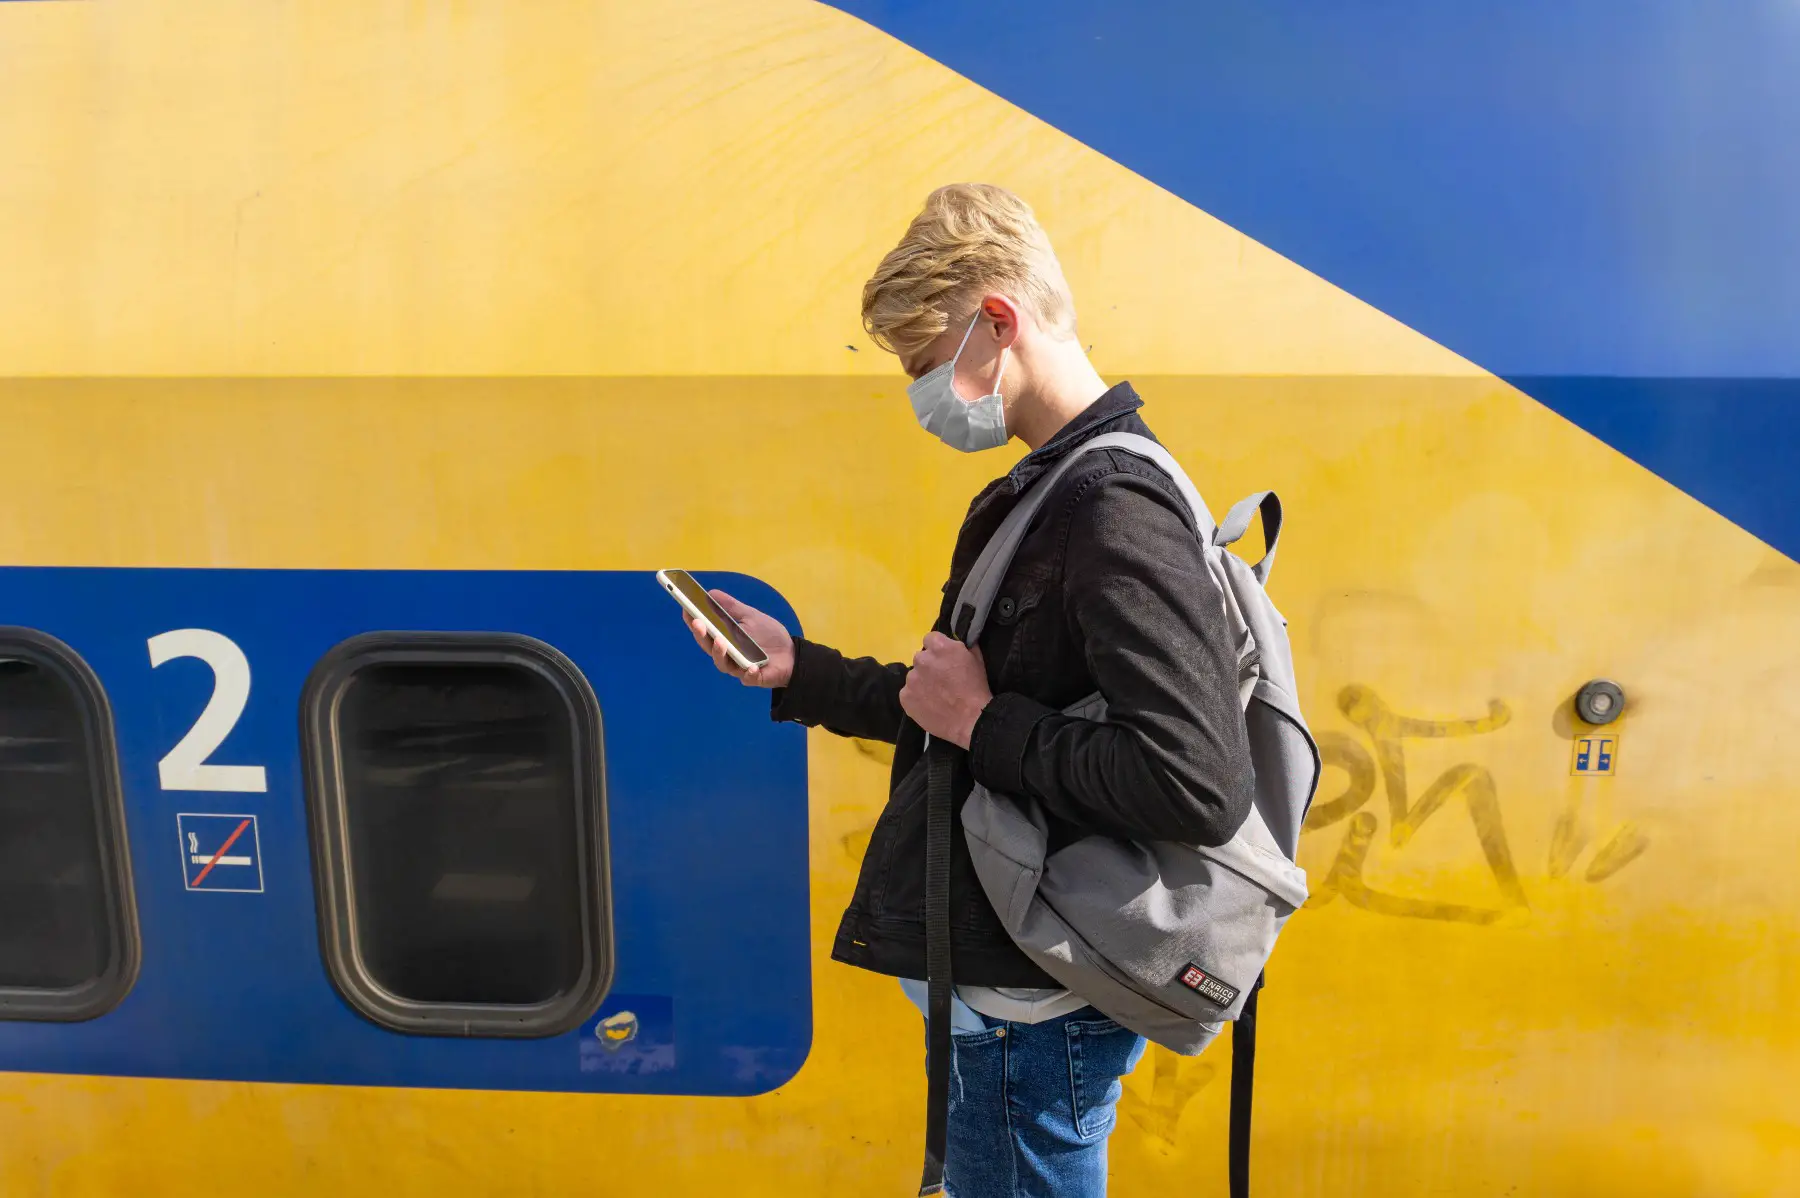 Netherlands train travel during coronavirus